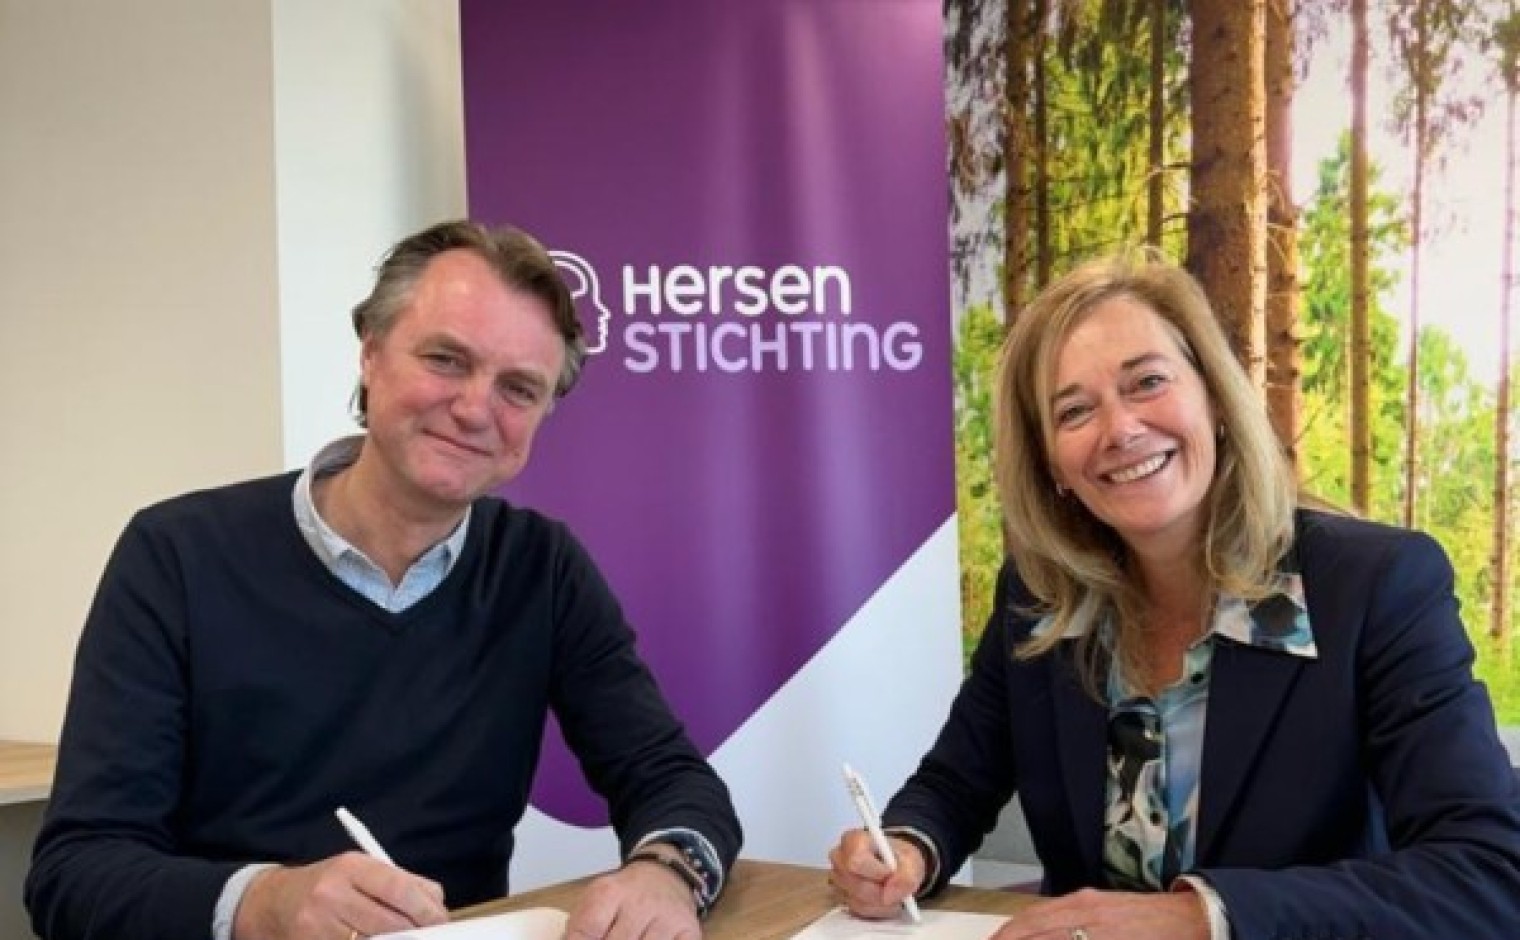 David Verschoor (directeur Hersenstichting) en Anke Braams (Managing Director Benelux Keesing Media Group) tekenen de overeenkomst.